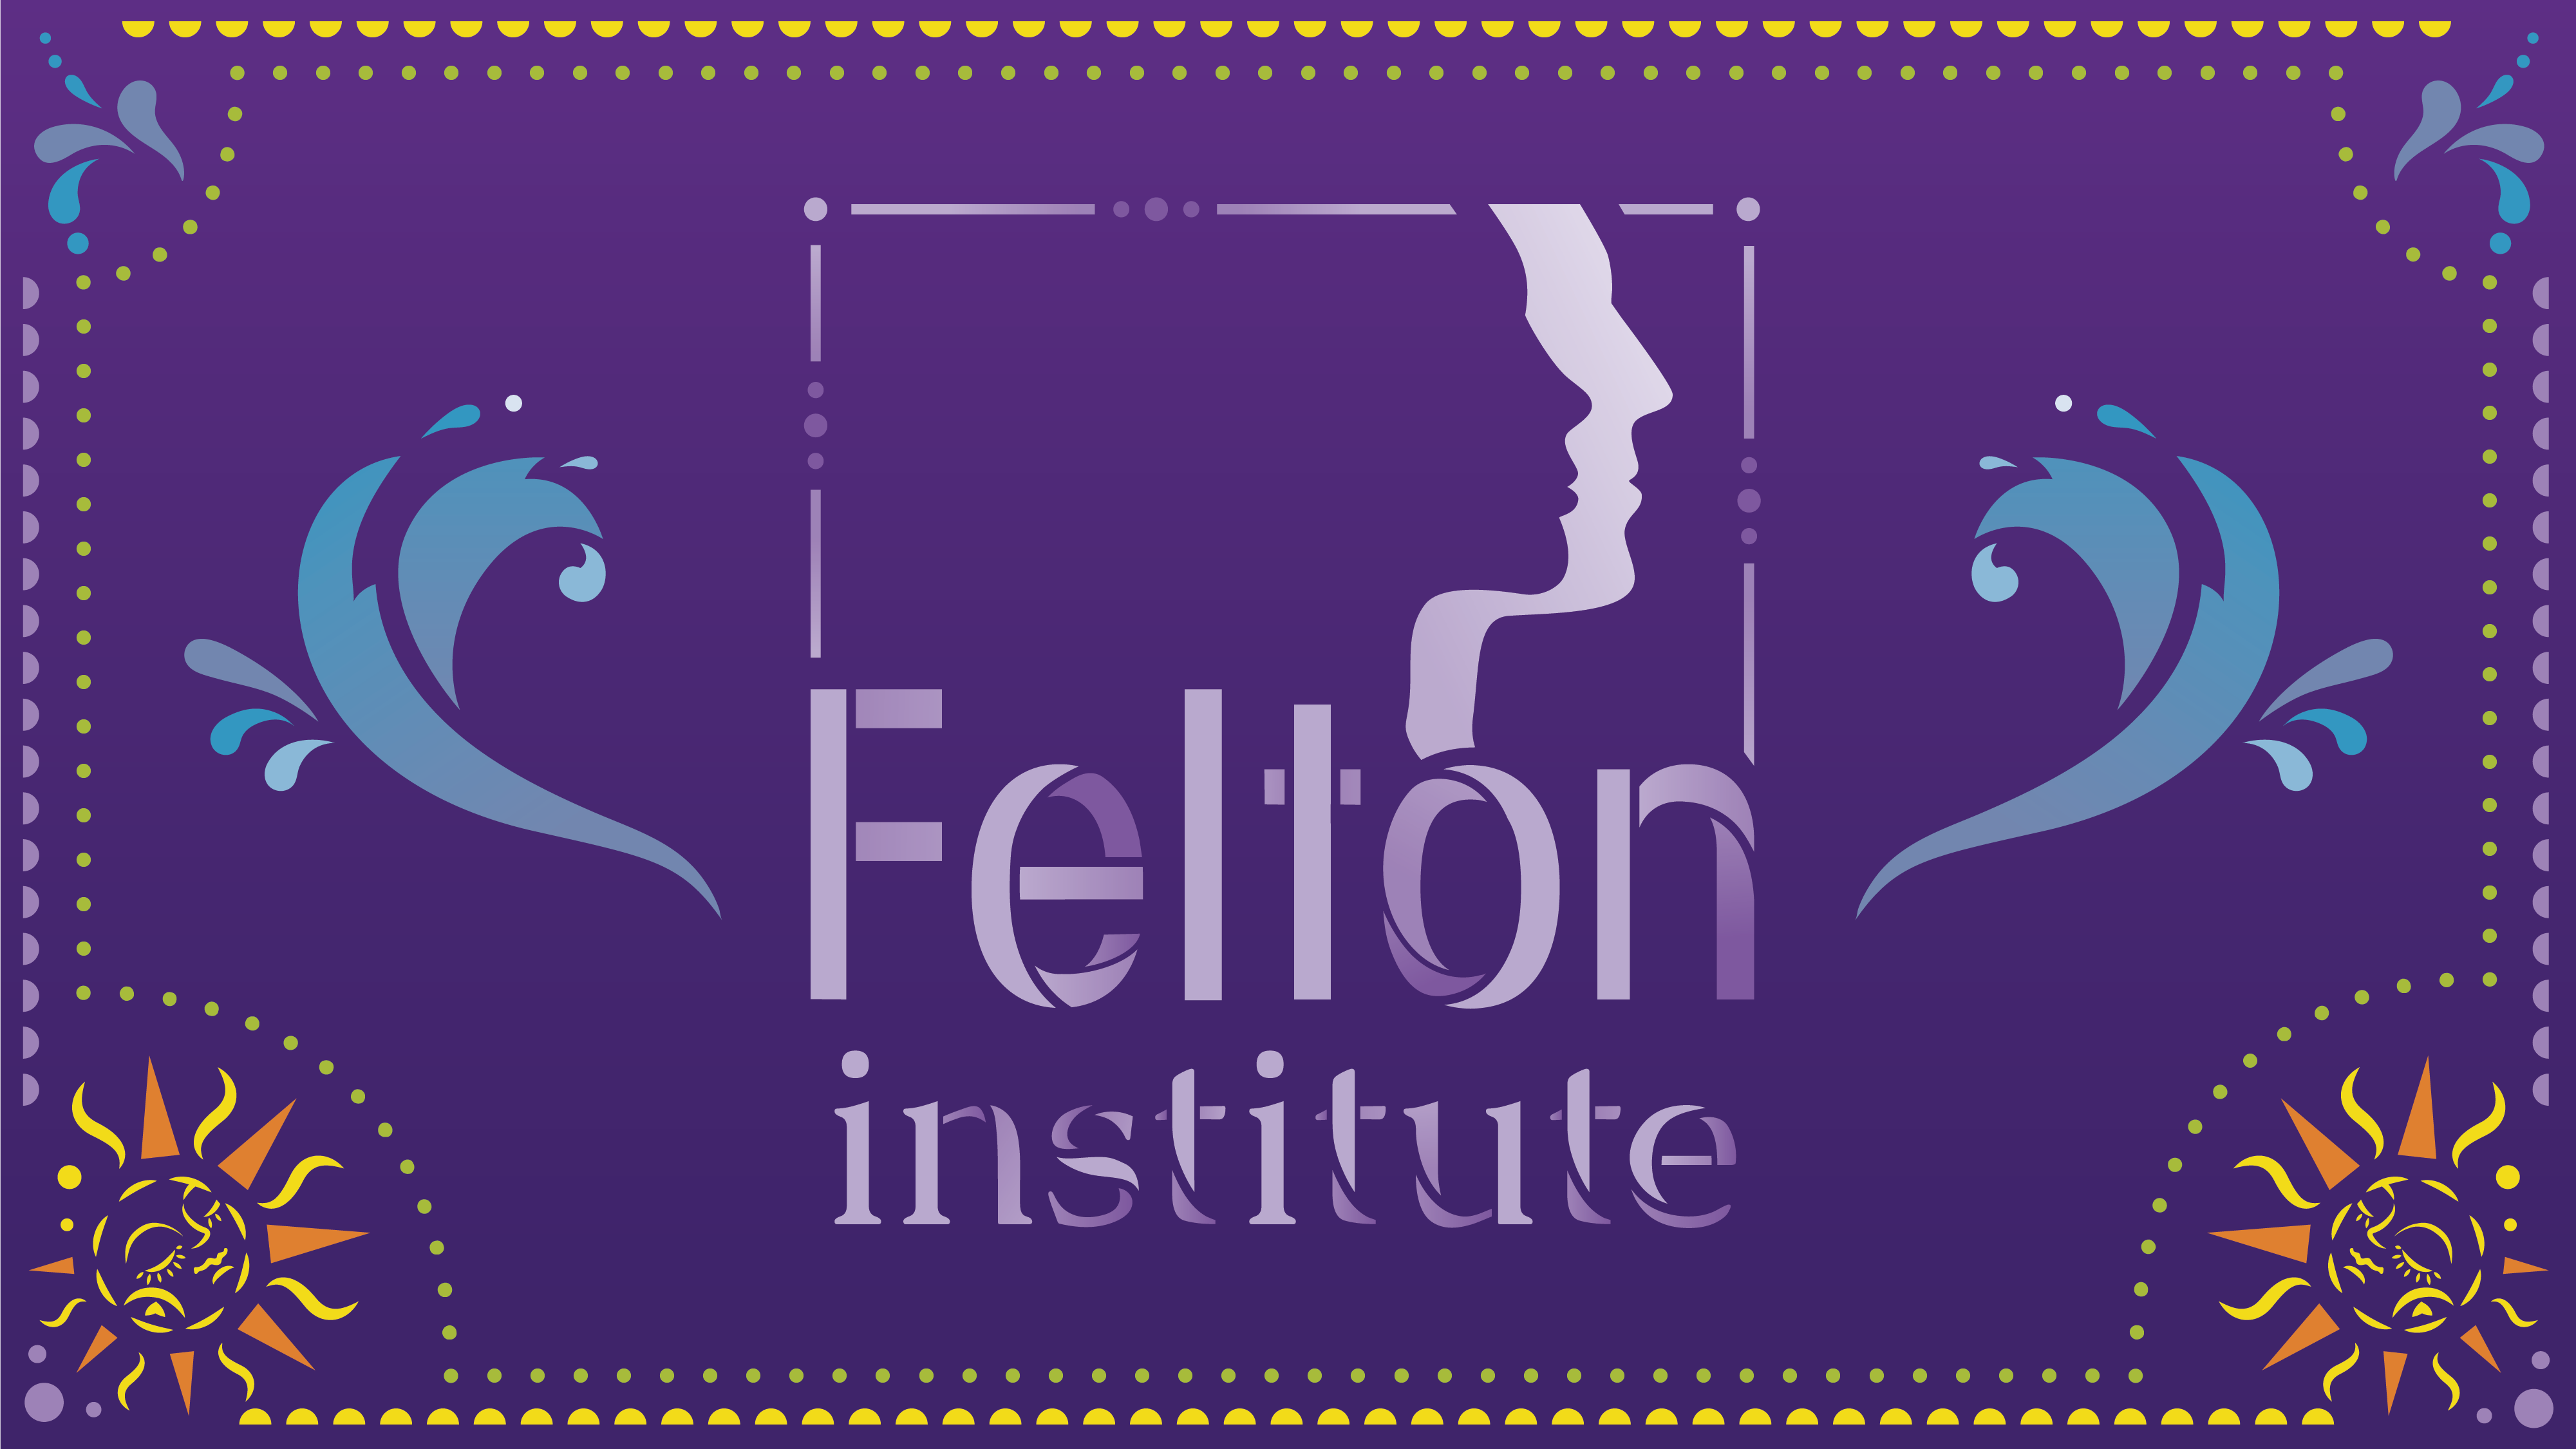 Felton Institute, Solmar Learning Center, La Gran Fiesta